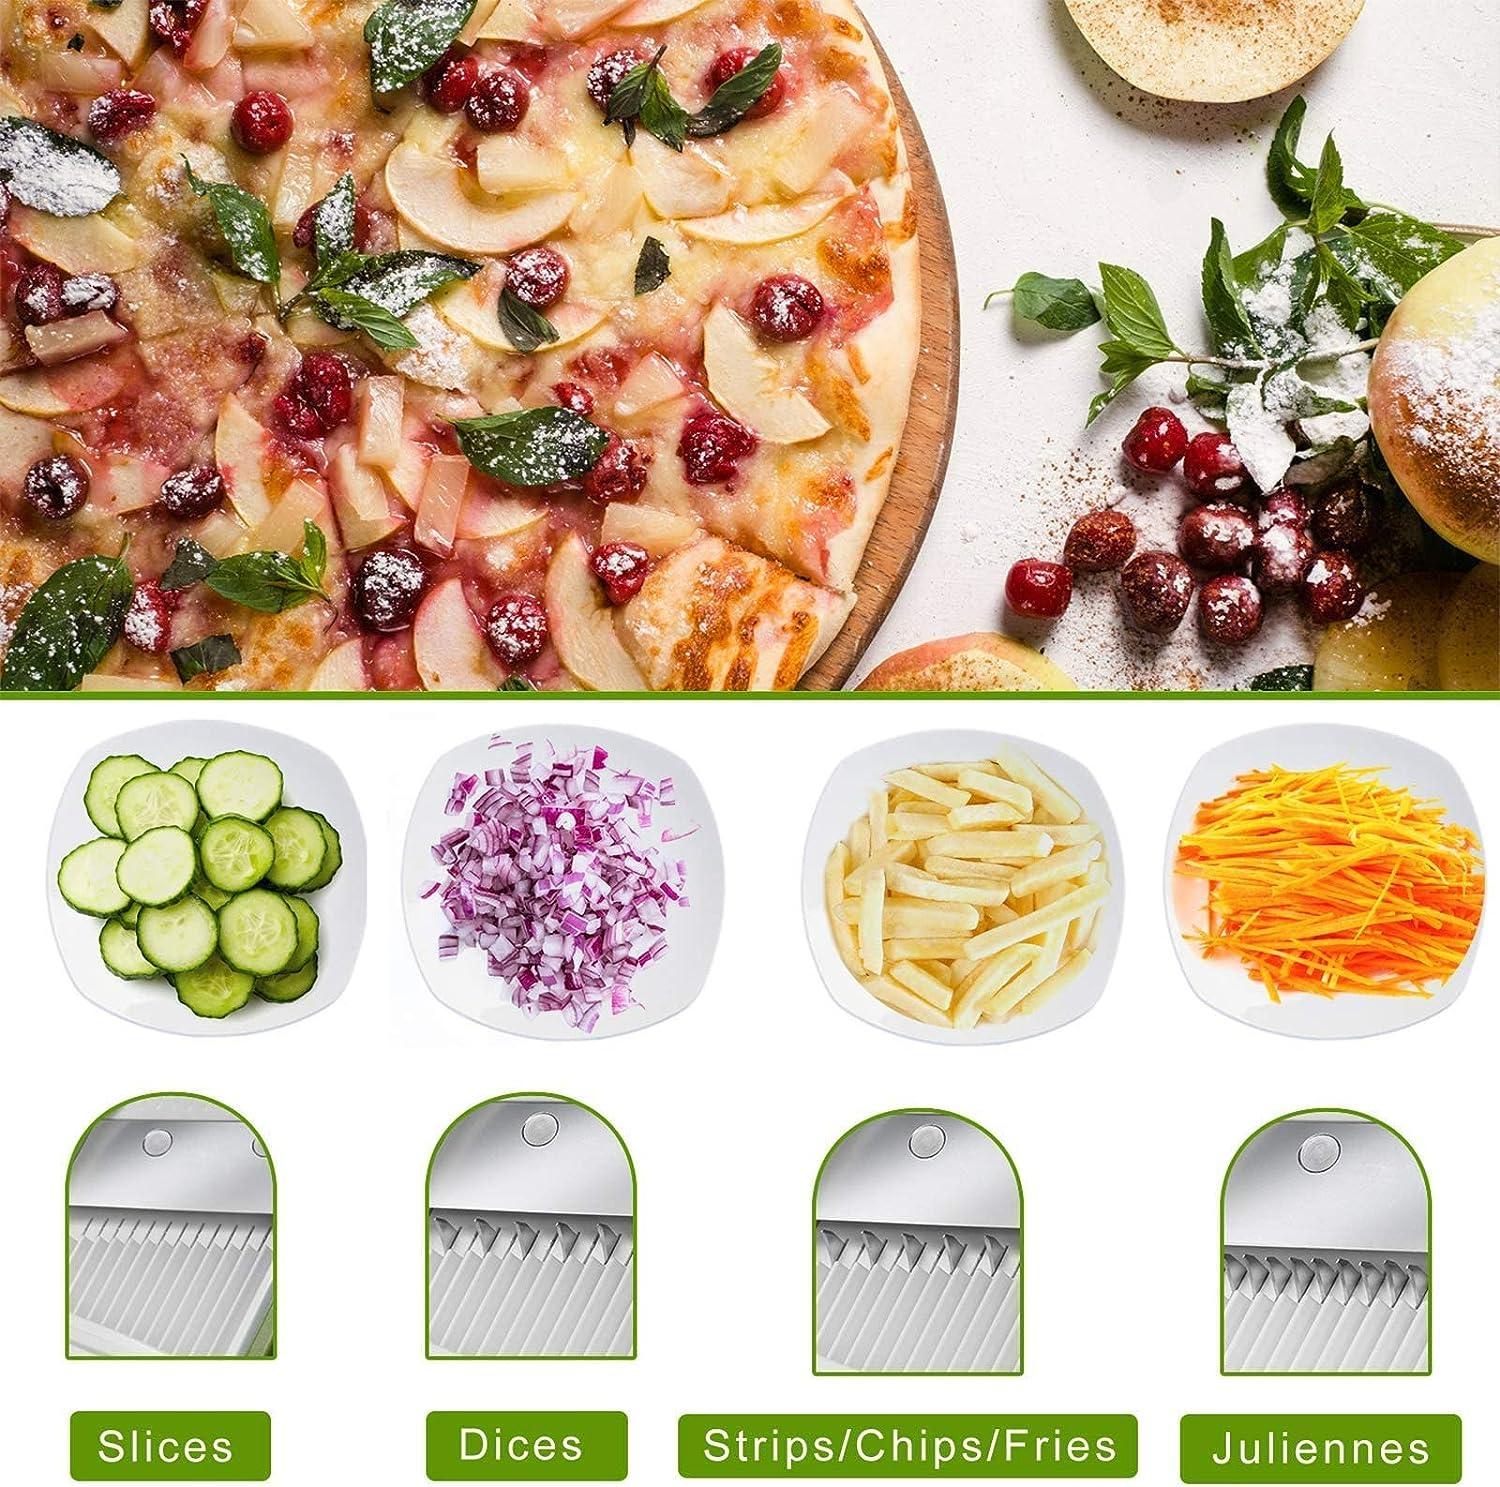 ONCE FOR ALL Mandoline Vegetable Slicer, Manual Kitchen Veg Chopper - Massive Discounts